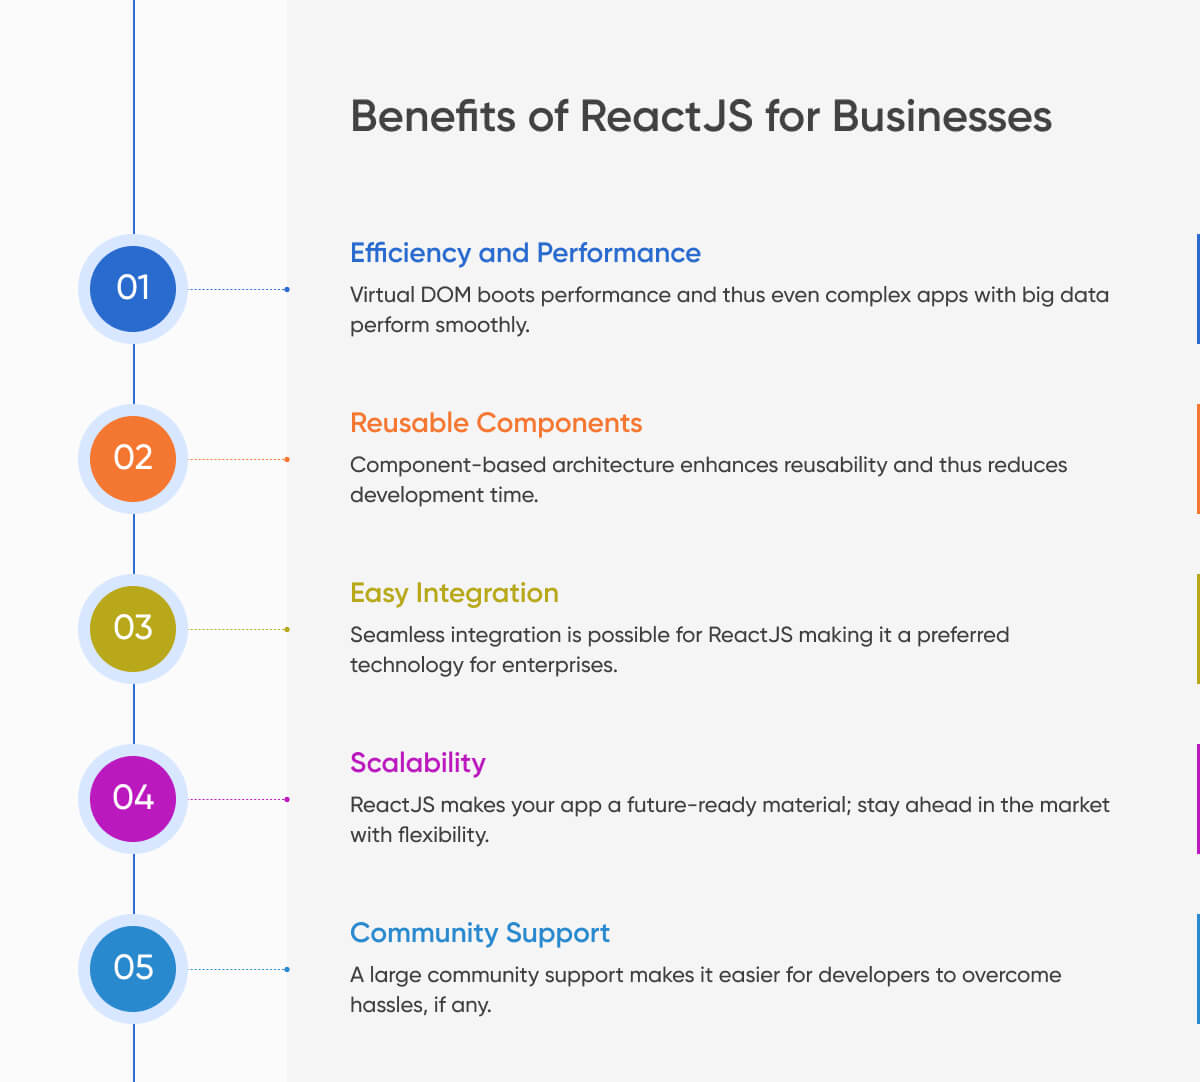 היתרונות של ReactJS לעסקים